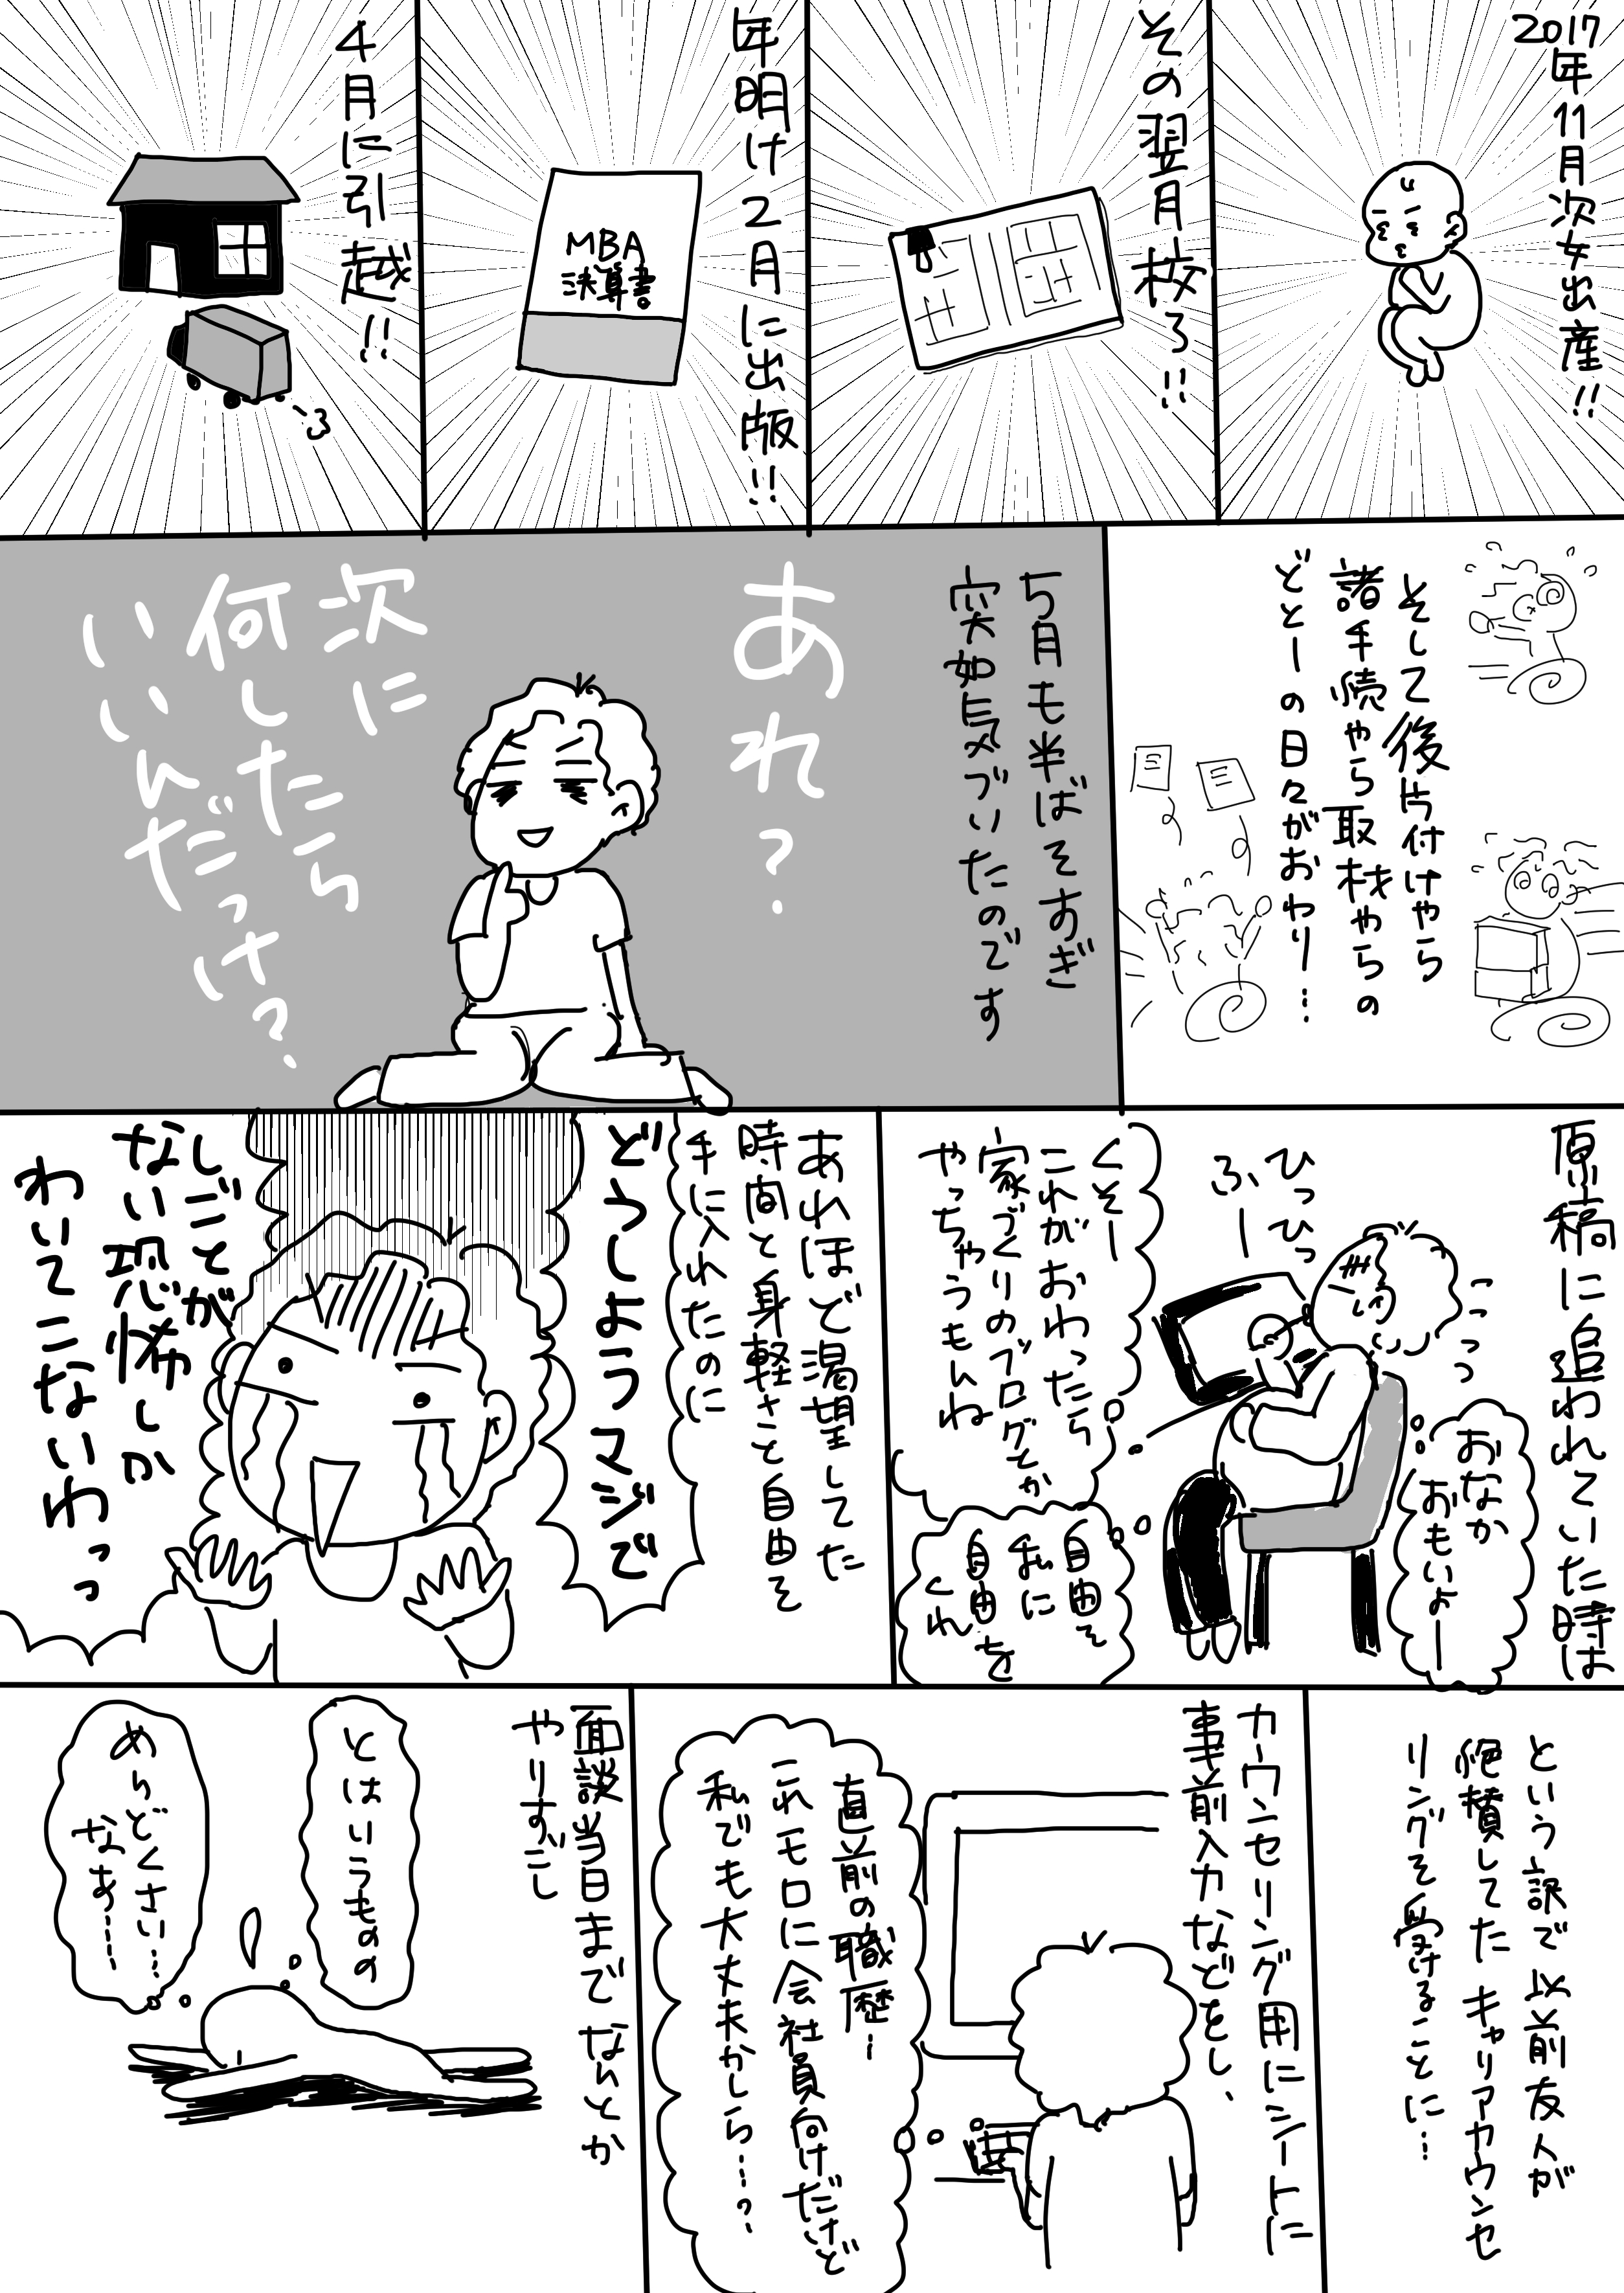 コミック9_出力_001